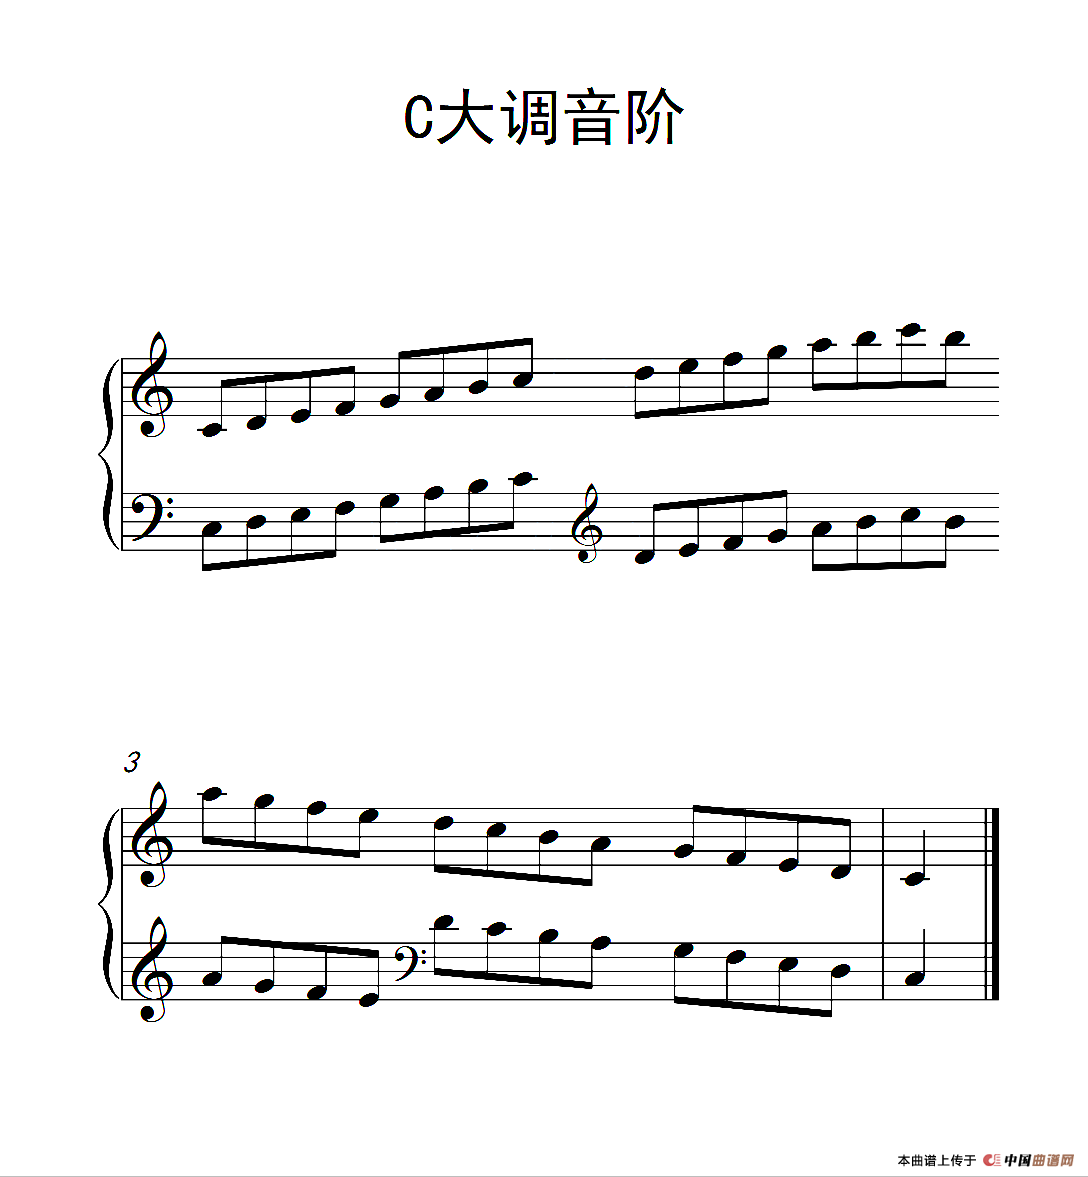 第一级c大调音阶中国音乐学院钢琴考级作品16级